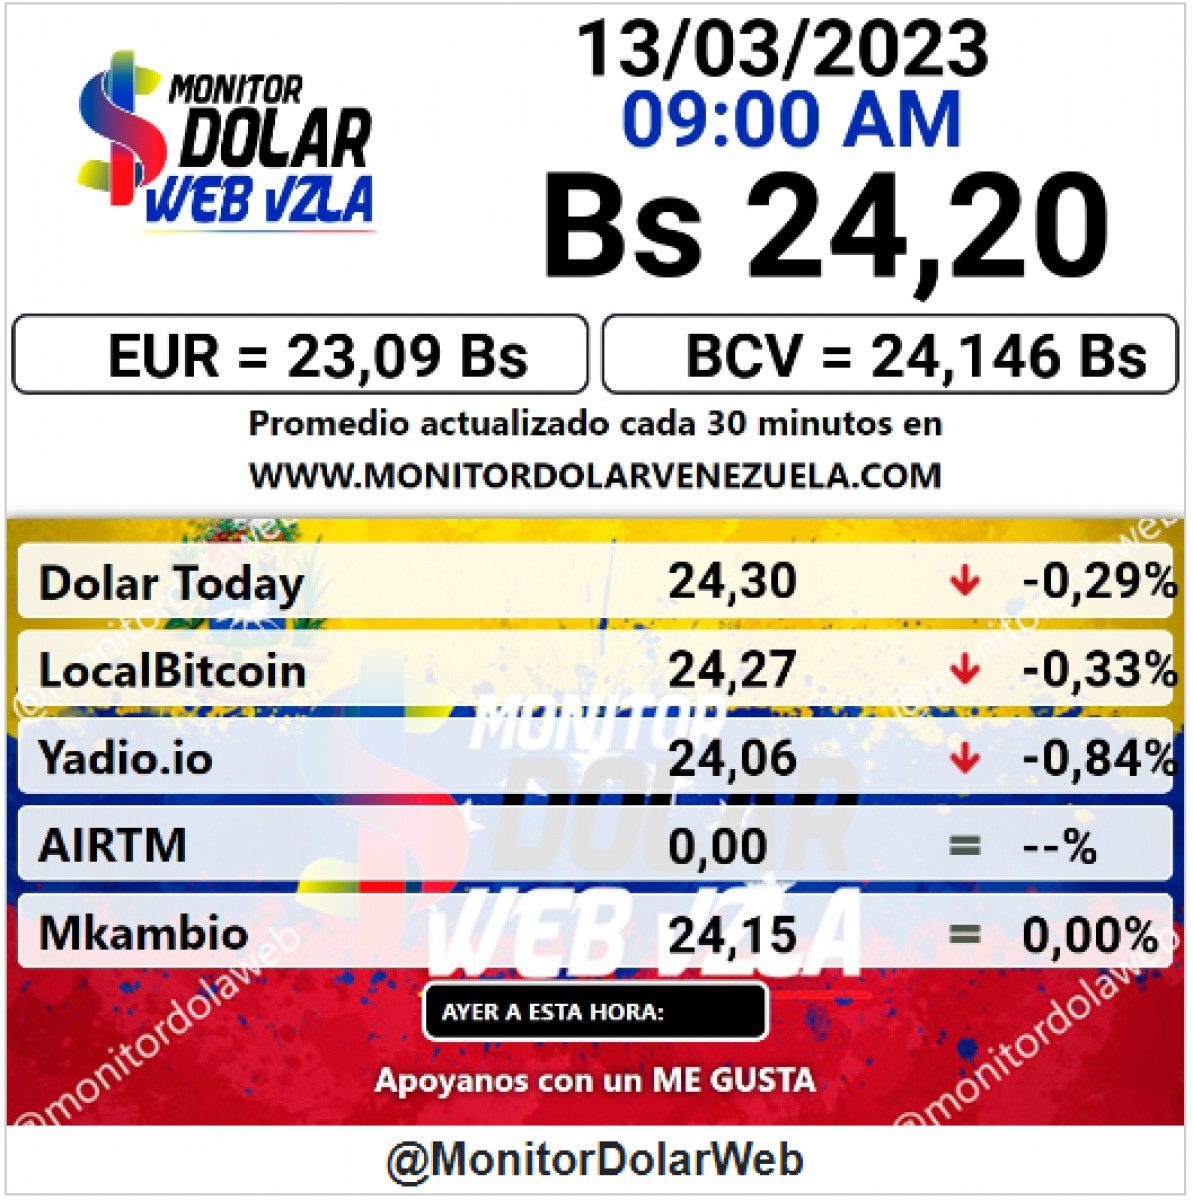 dolartoday en venezuela precio del dolar este lunes 13 de marzo de 2023 laverdaddemonagas.com monitor2